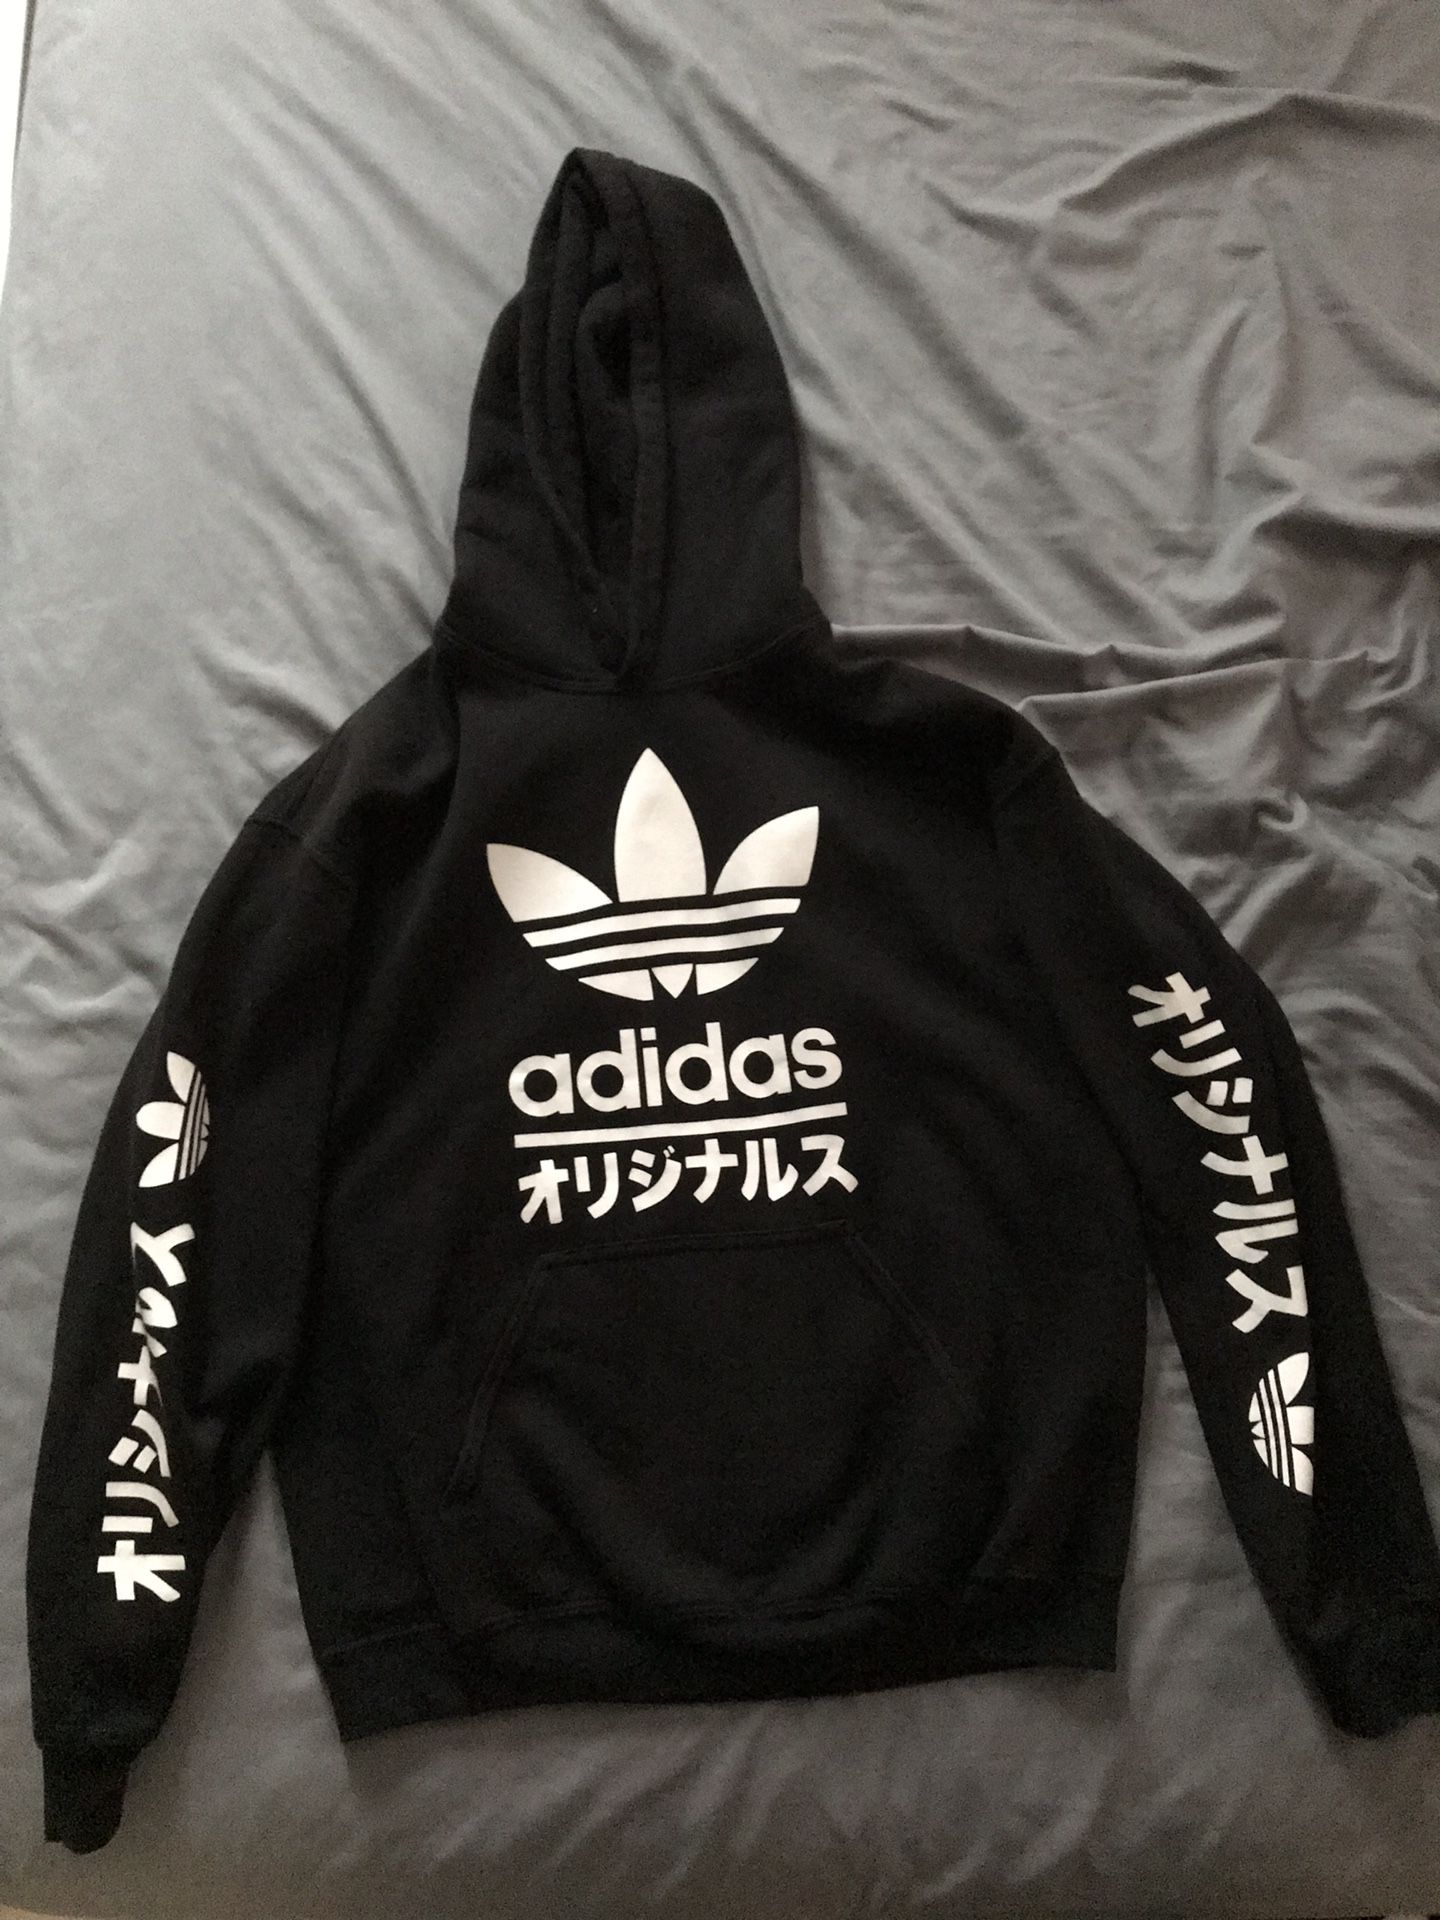 Adidas Japanese Hoodie